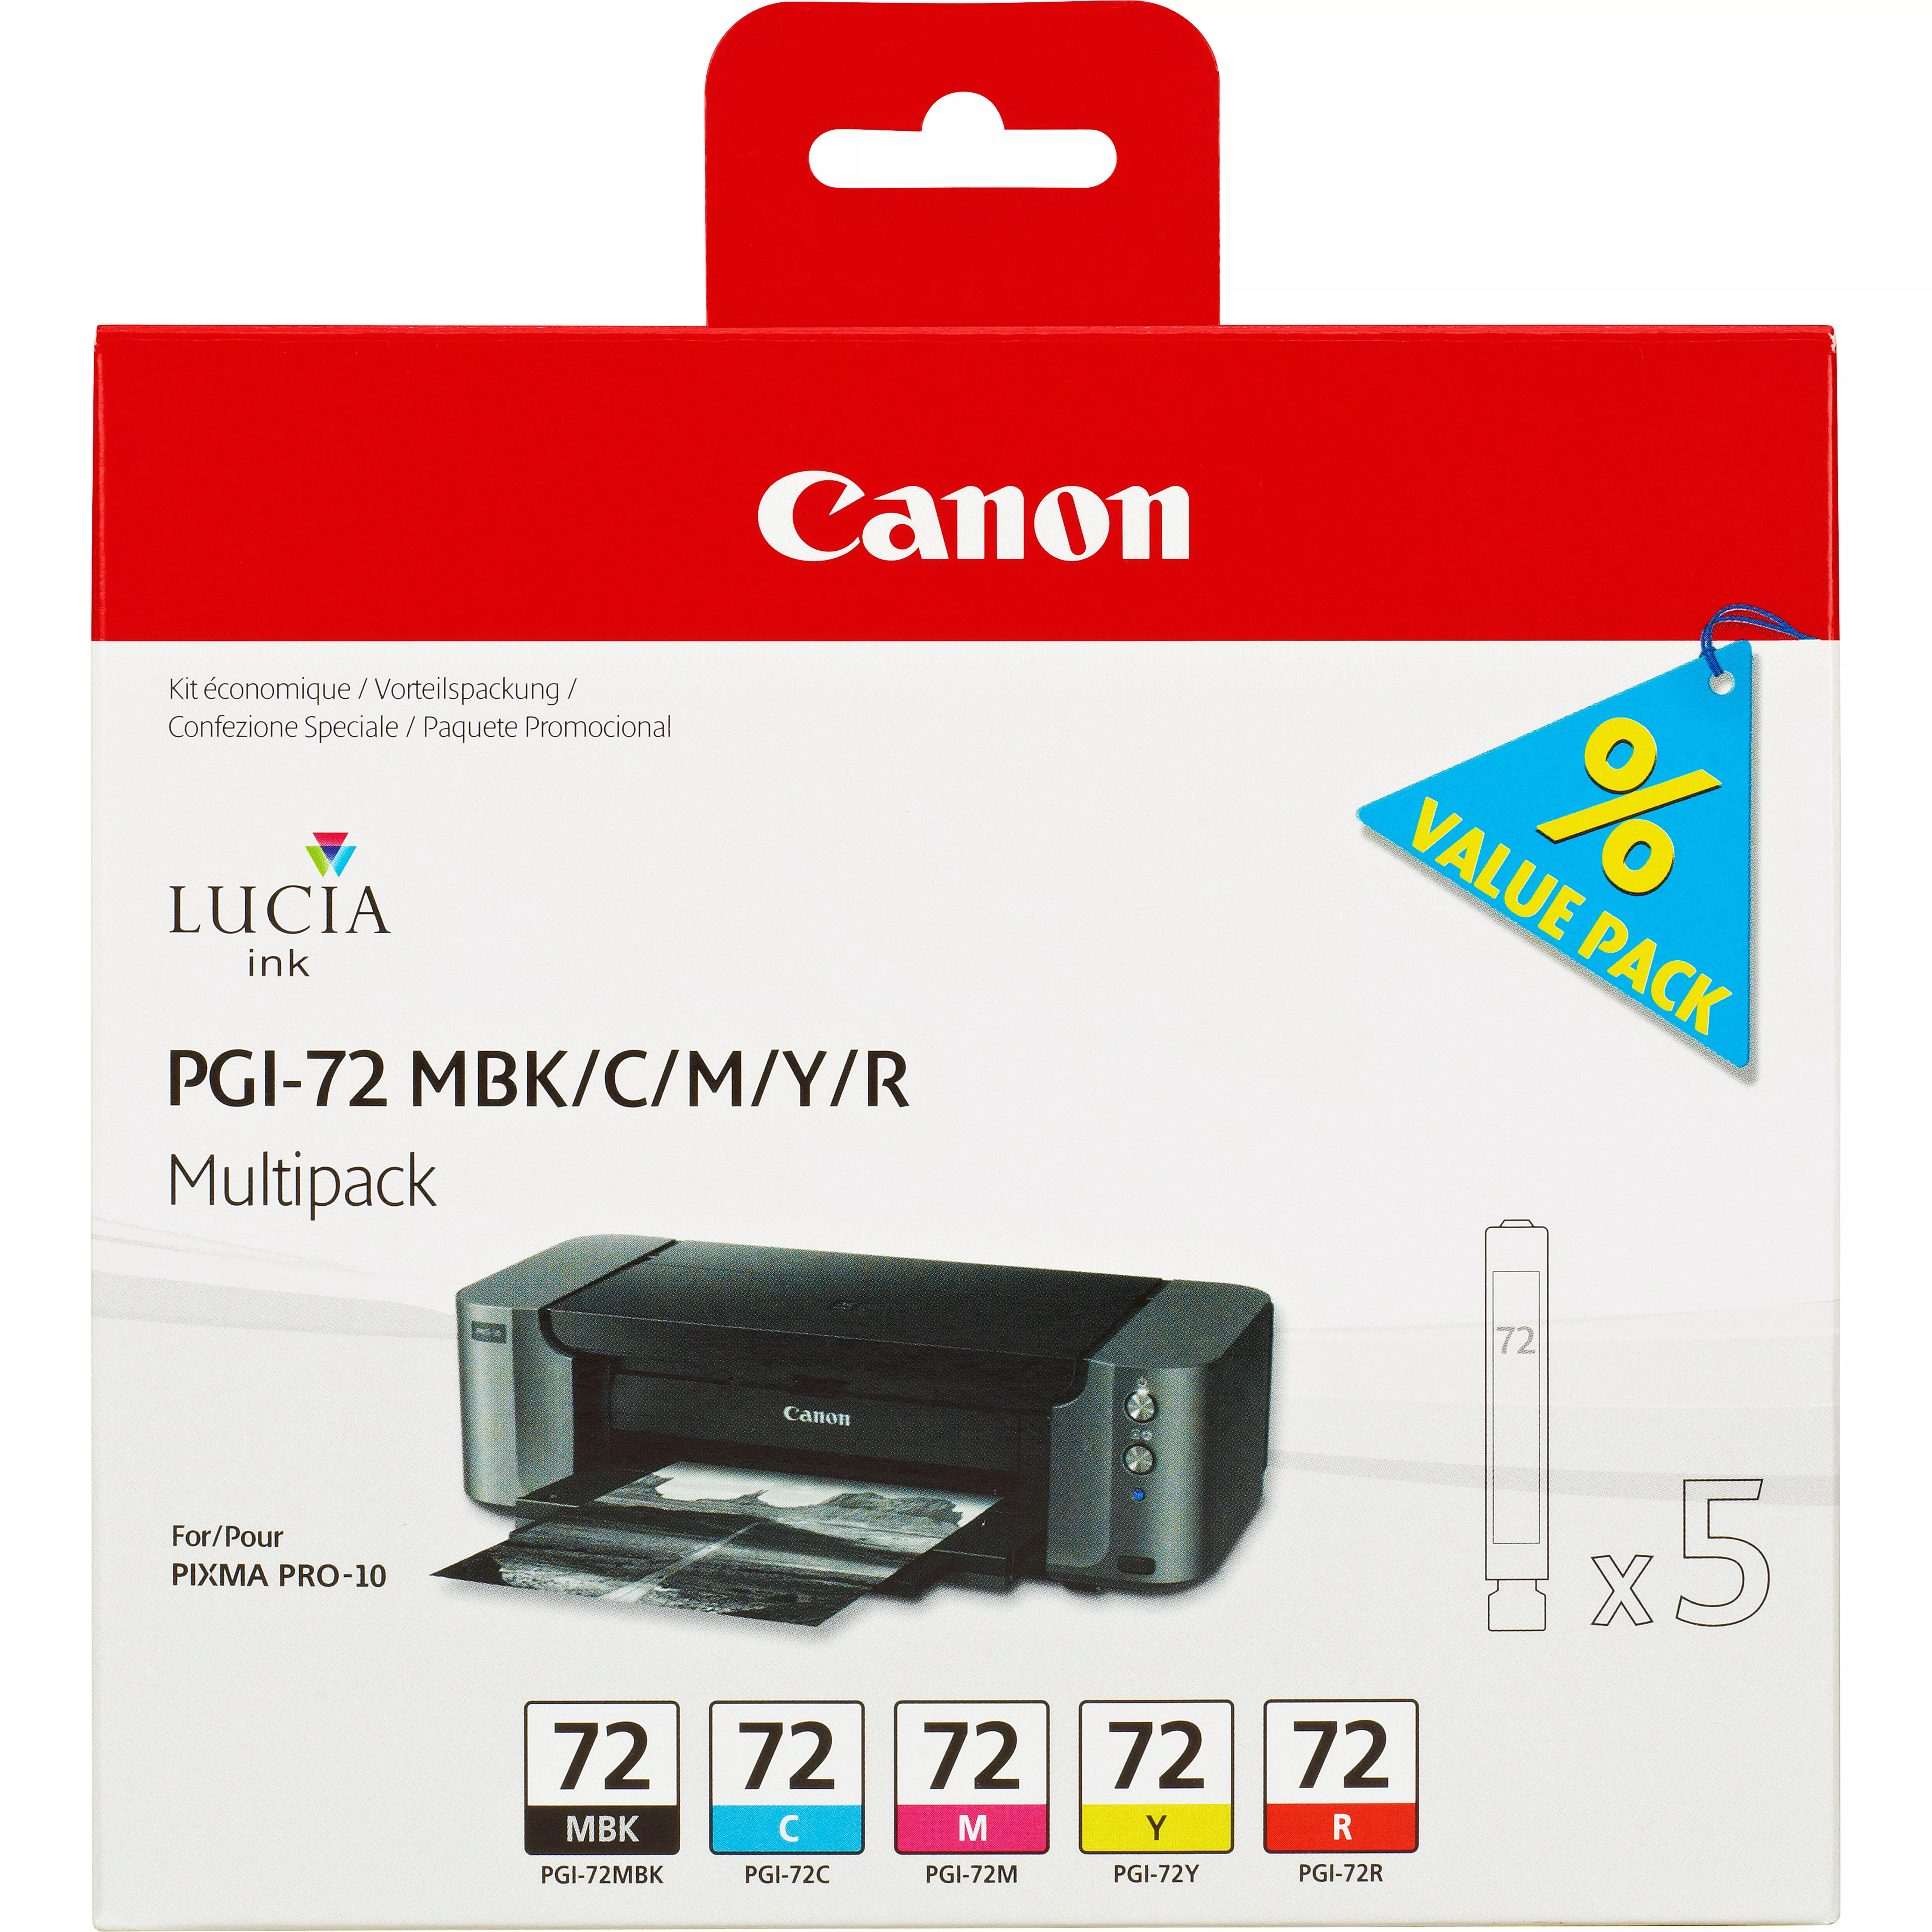 Achat CANON 1LB PGI-72 MBK/C/M/Y/R ink cartridge black and sur hello RSE